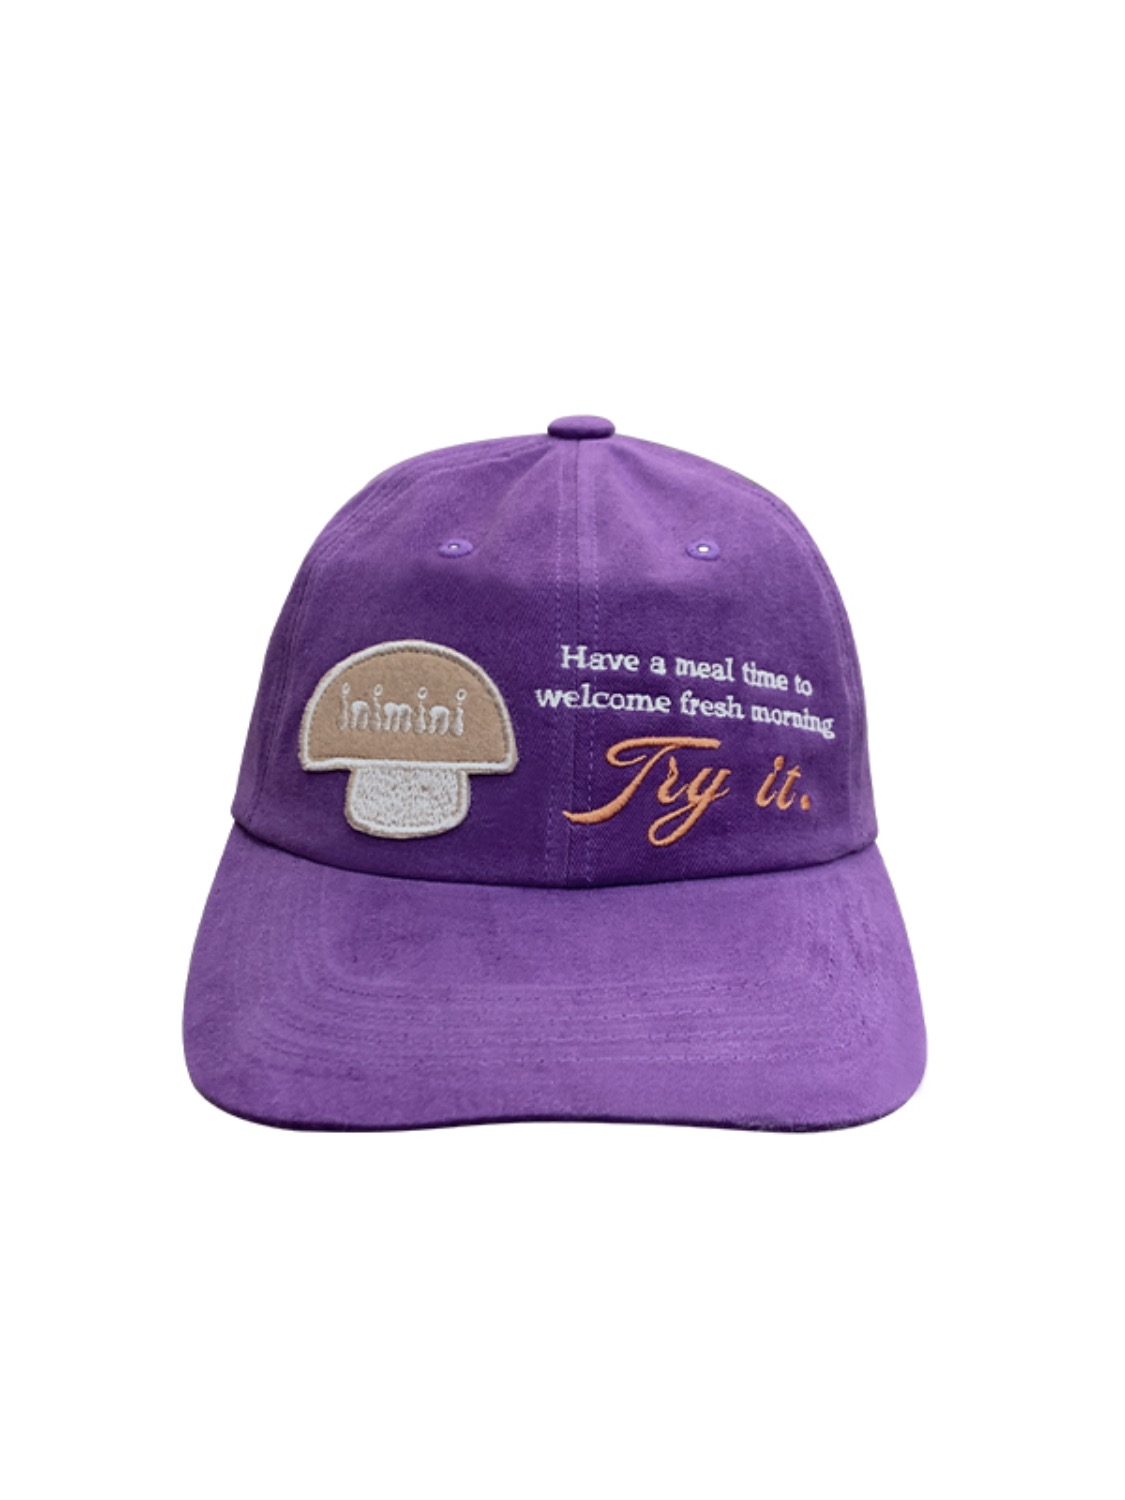 try it cap (purple)